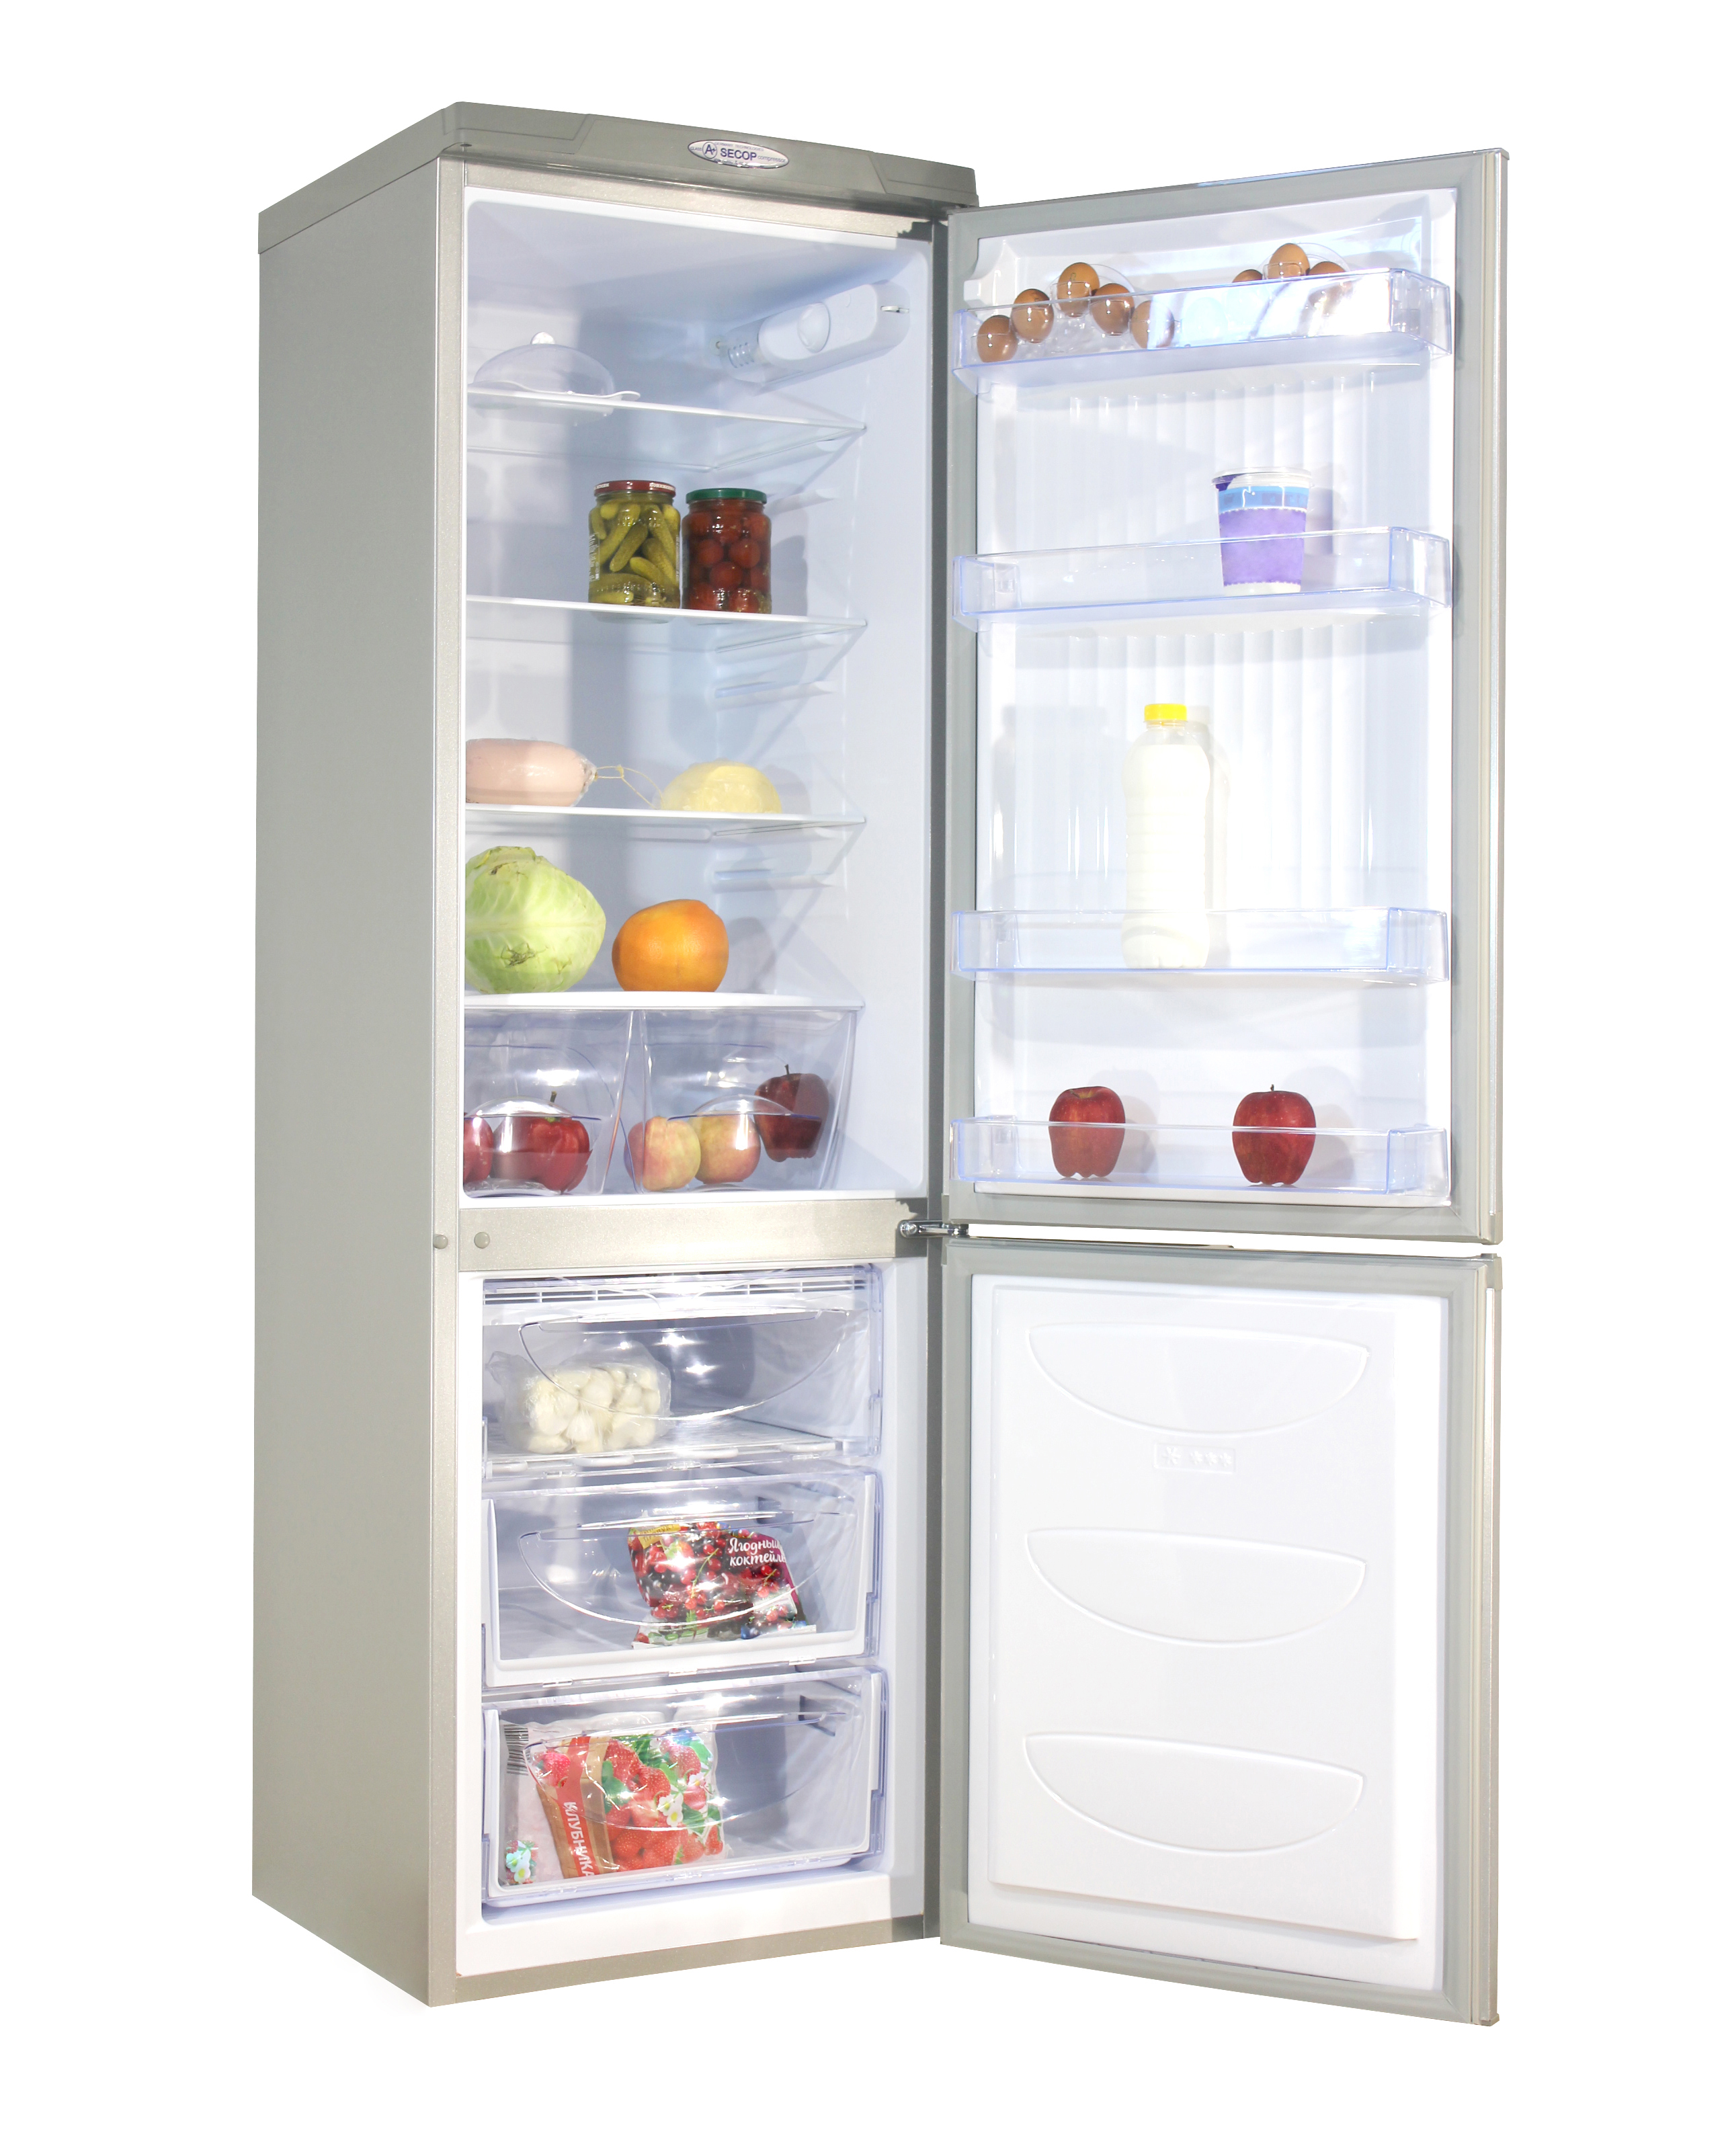 Холодильник дон производитель. Холодильник don r-291 mi. Холодильник don r 291 металлик искристый. Холодильник don r-291 ng нерж.сталь. Холодильник don r-290 ng.